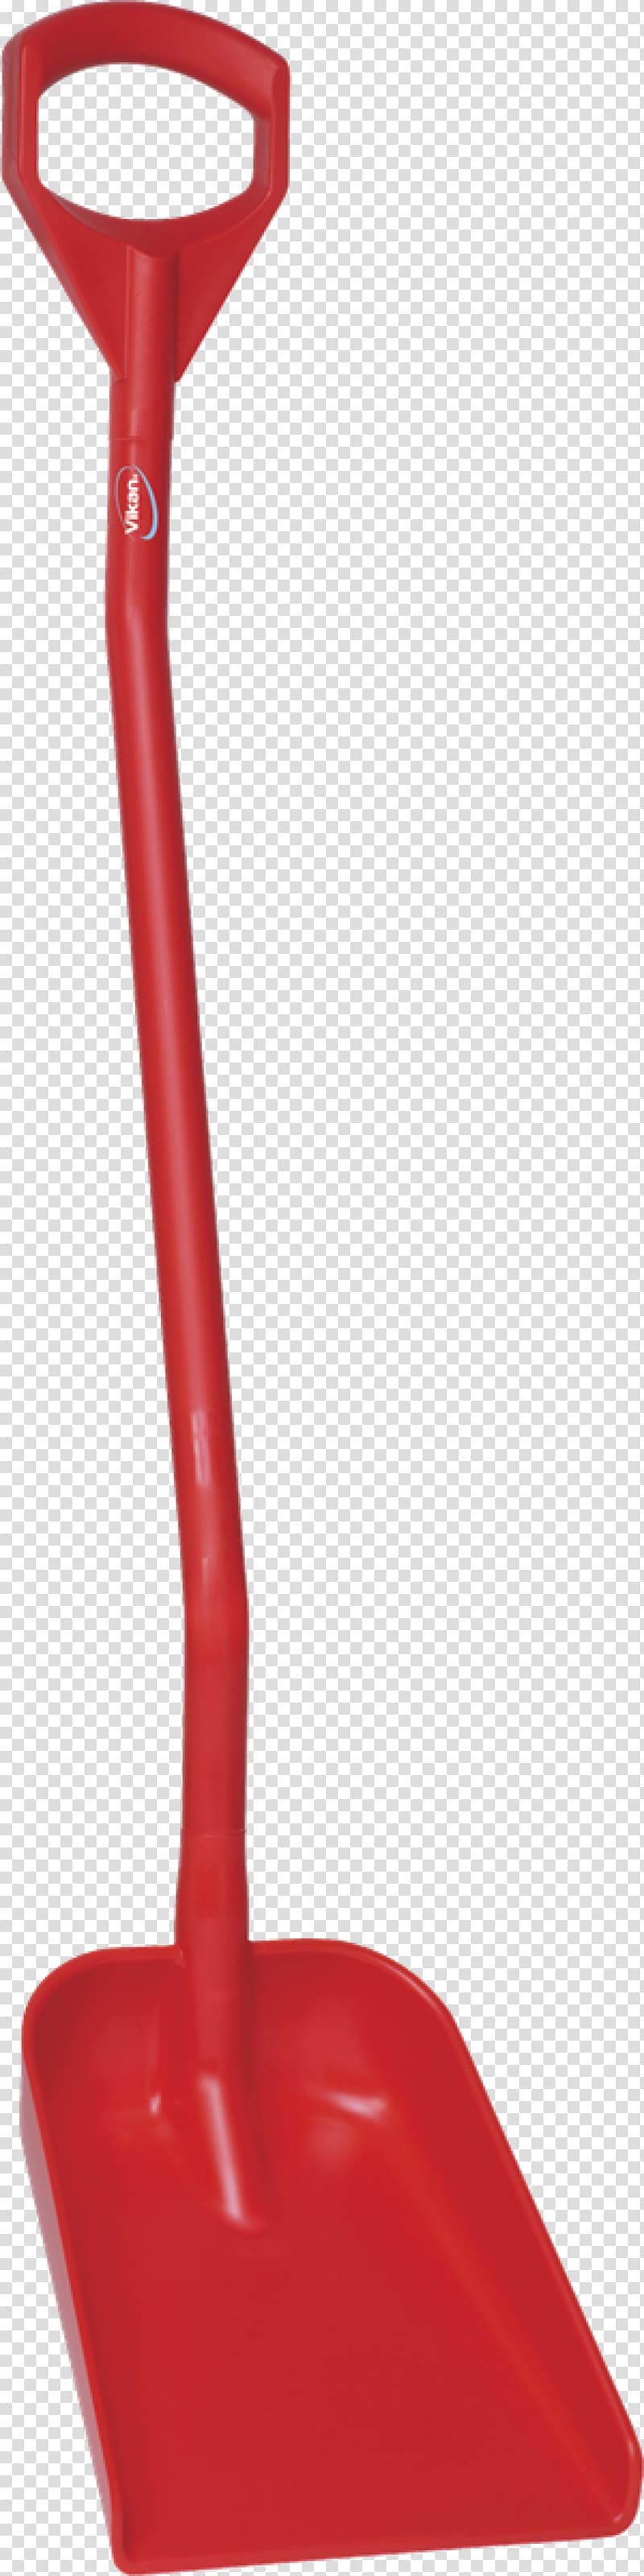 Shovel Red Dustpan Gardening Forks Color, shovel transparent background PNG clipart